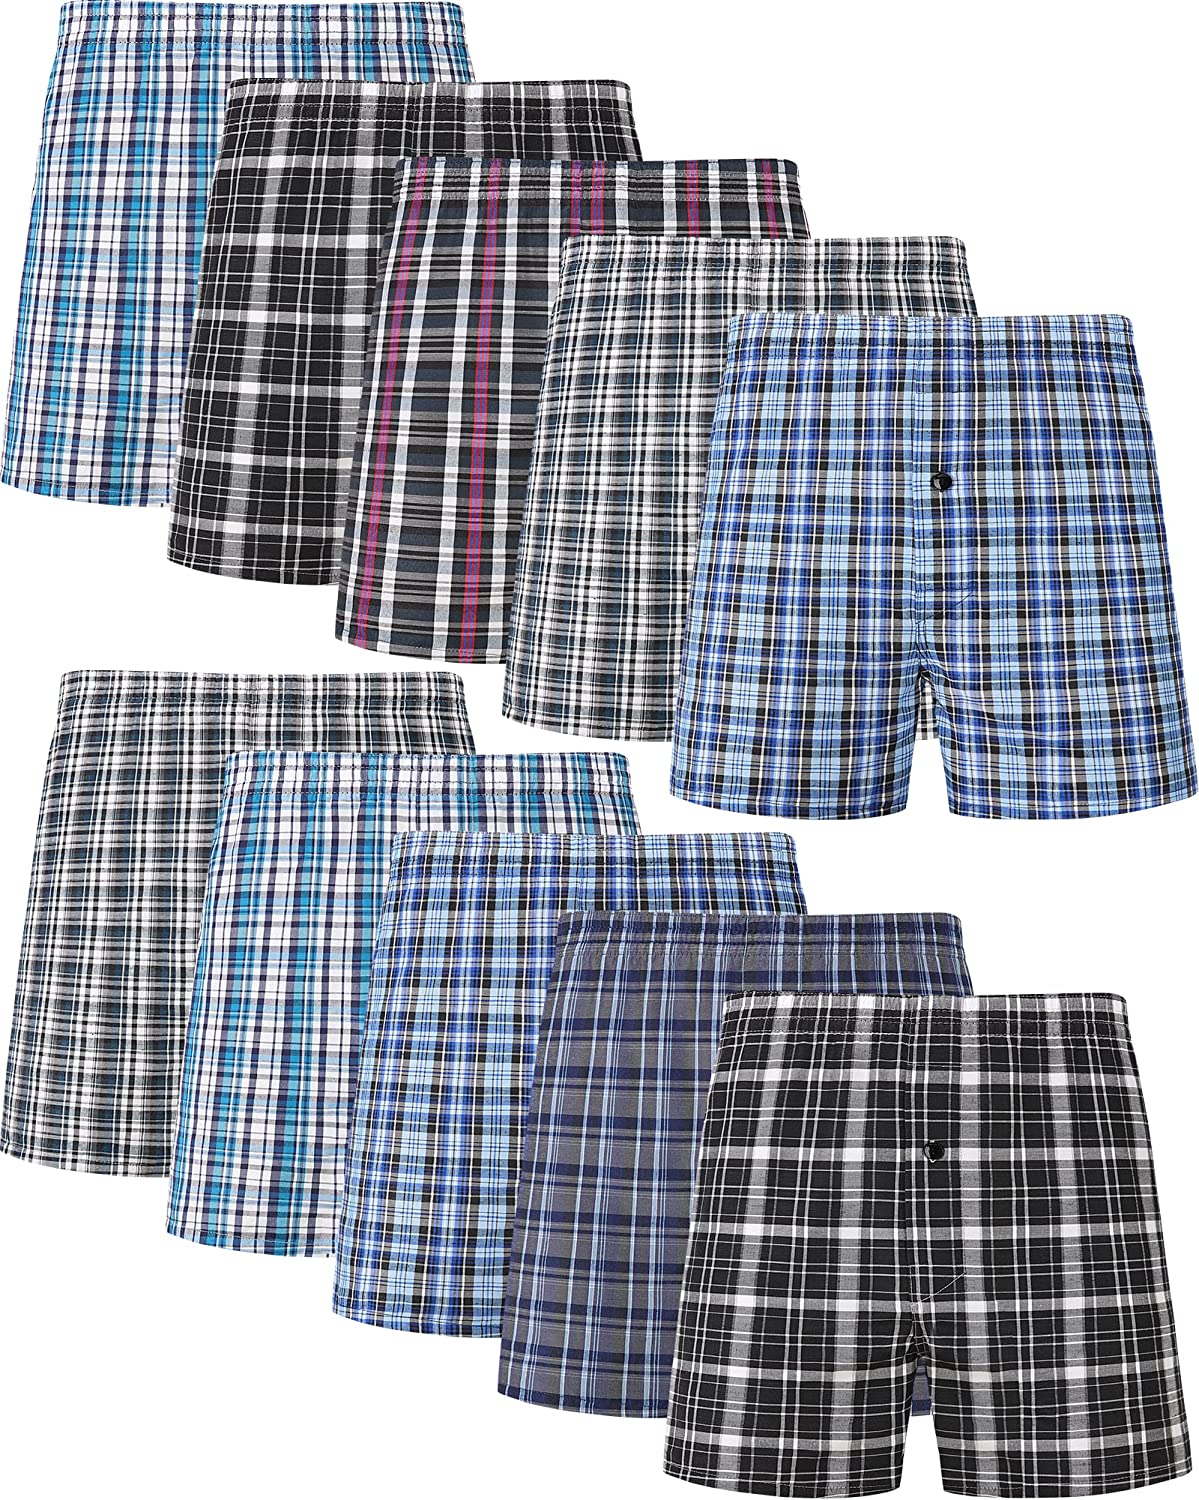 JupiterSecret Men's Woven Boxers Underwear Pack Cotton Boxer Shorts  Assorted Colors at  Men's Clothing store